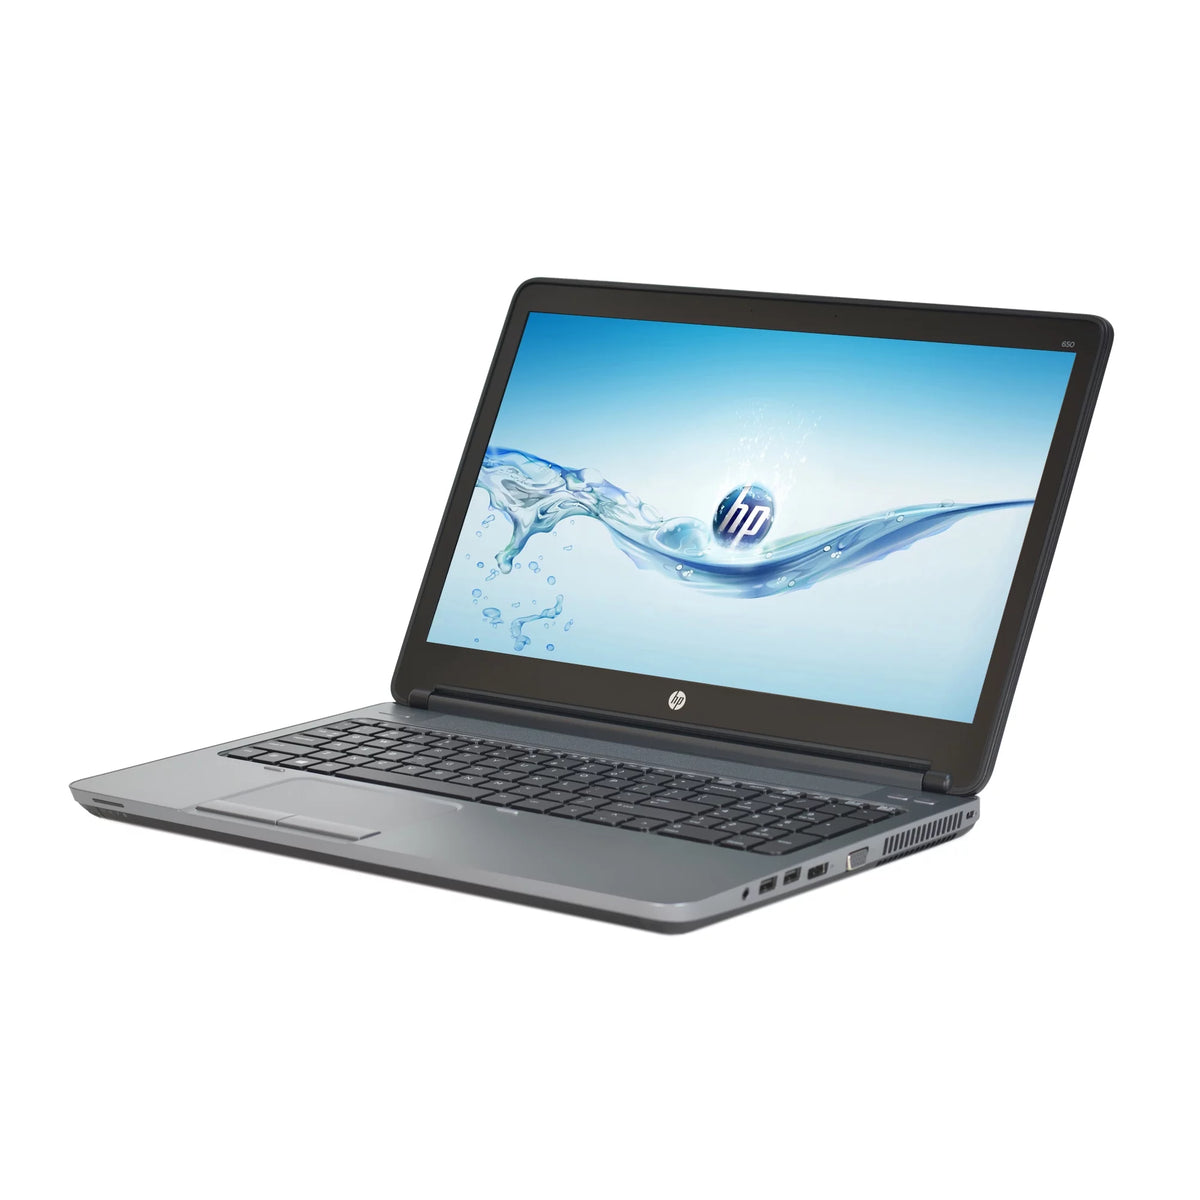 HP Probook 650 G1 15.6" Intel Core i5 4th GEN 8GB 256GB Ssd Win 10 Refurbished A+ WF270